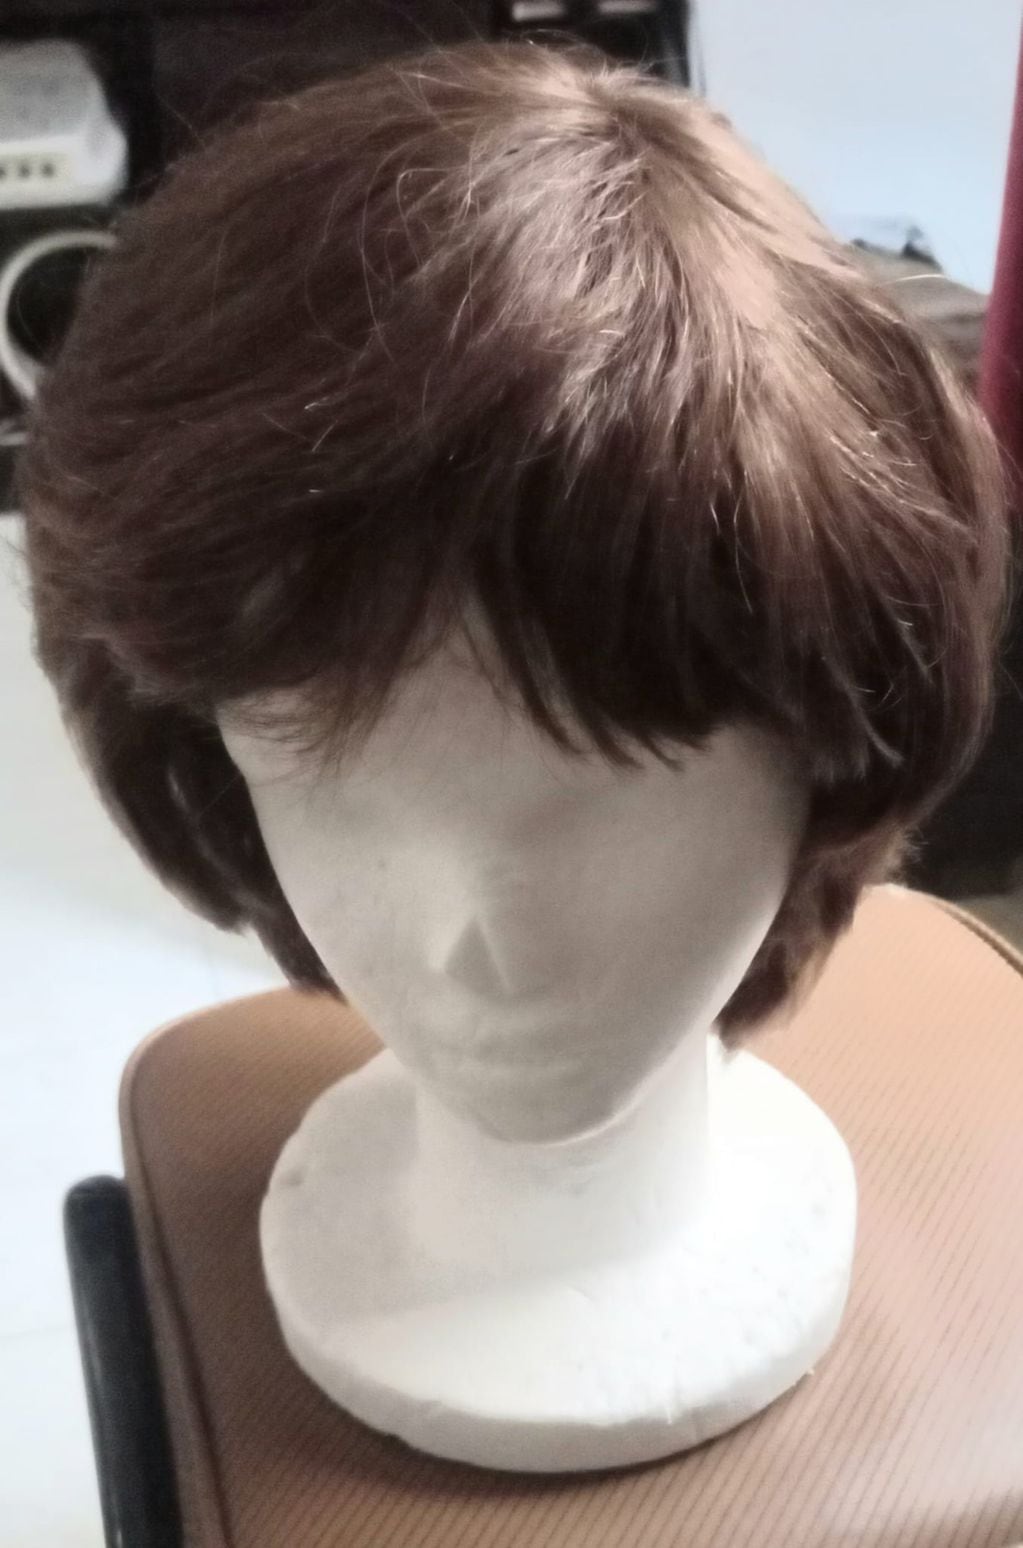 Un ejemplo de las pelucas que se logran armar con la donación de cabello.